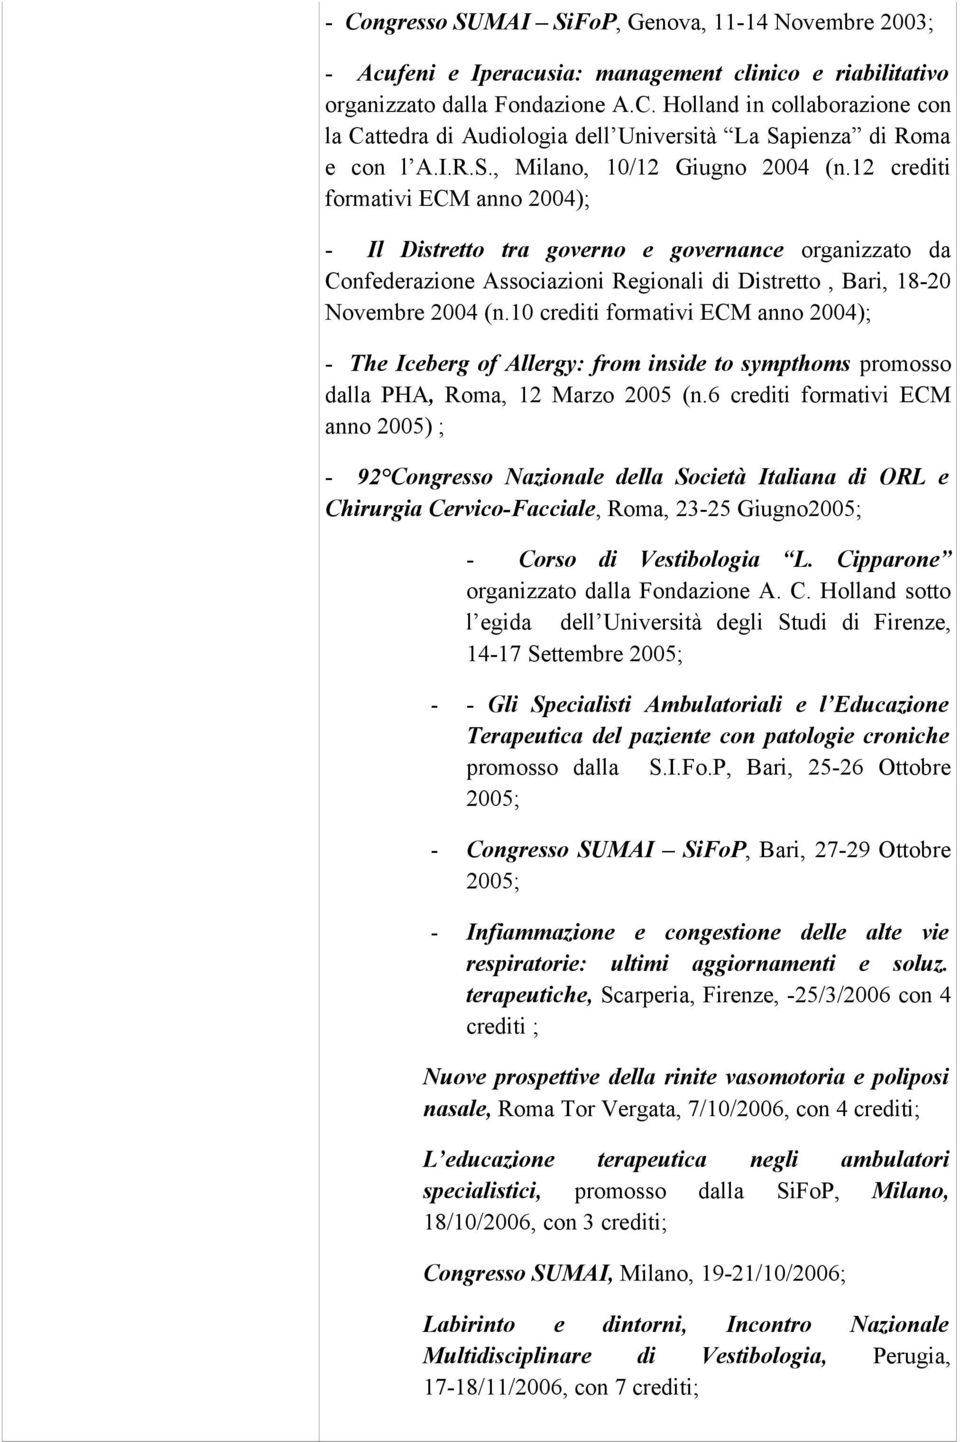 12 crediti formativi ECM anno 2004); - Il Distretto tra governo e governance organizzato da Confederazione Associazioni Regionali di Distretto, Bari, 18-20 Novembre 2004 (n.